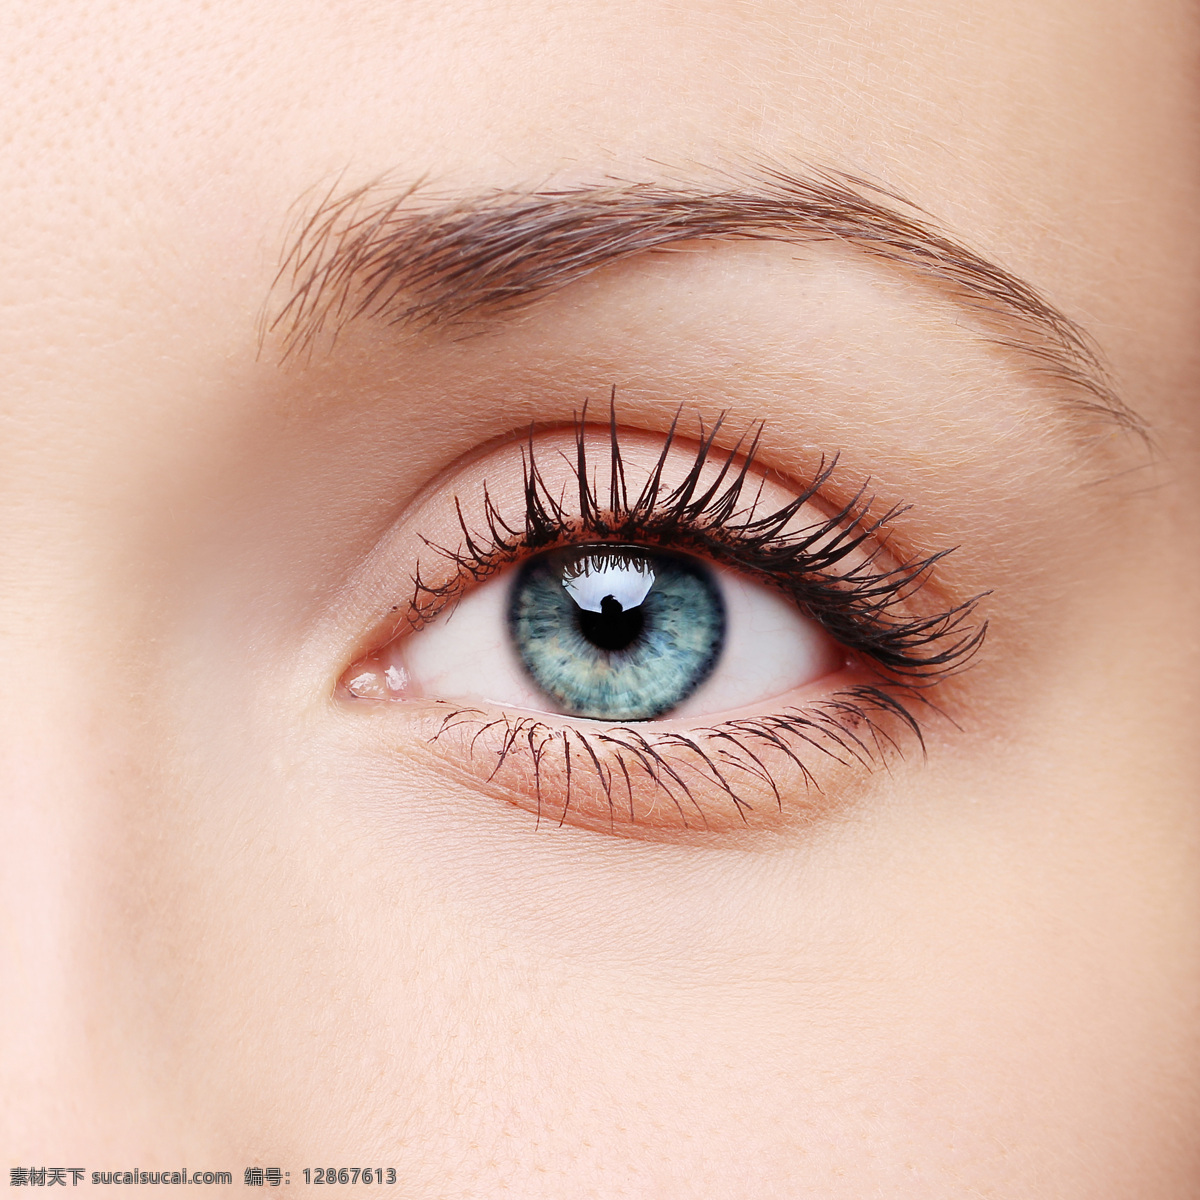 美女 眼睛 睫毛 眼睛特写 瞳孔 眼珠 眼球 女性眼睛 人体器官图 人物图片